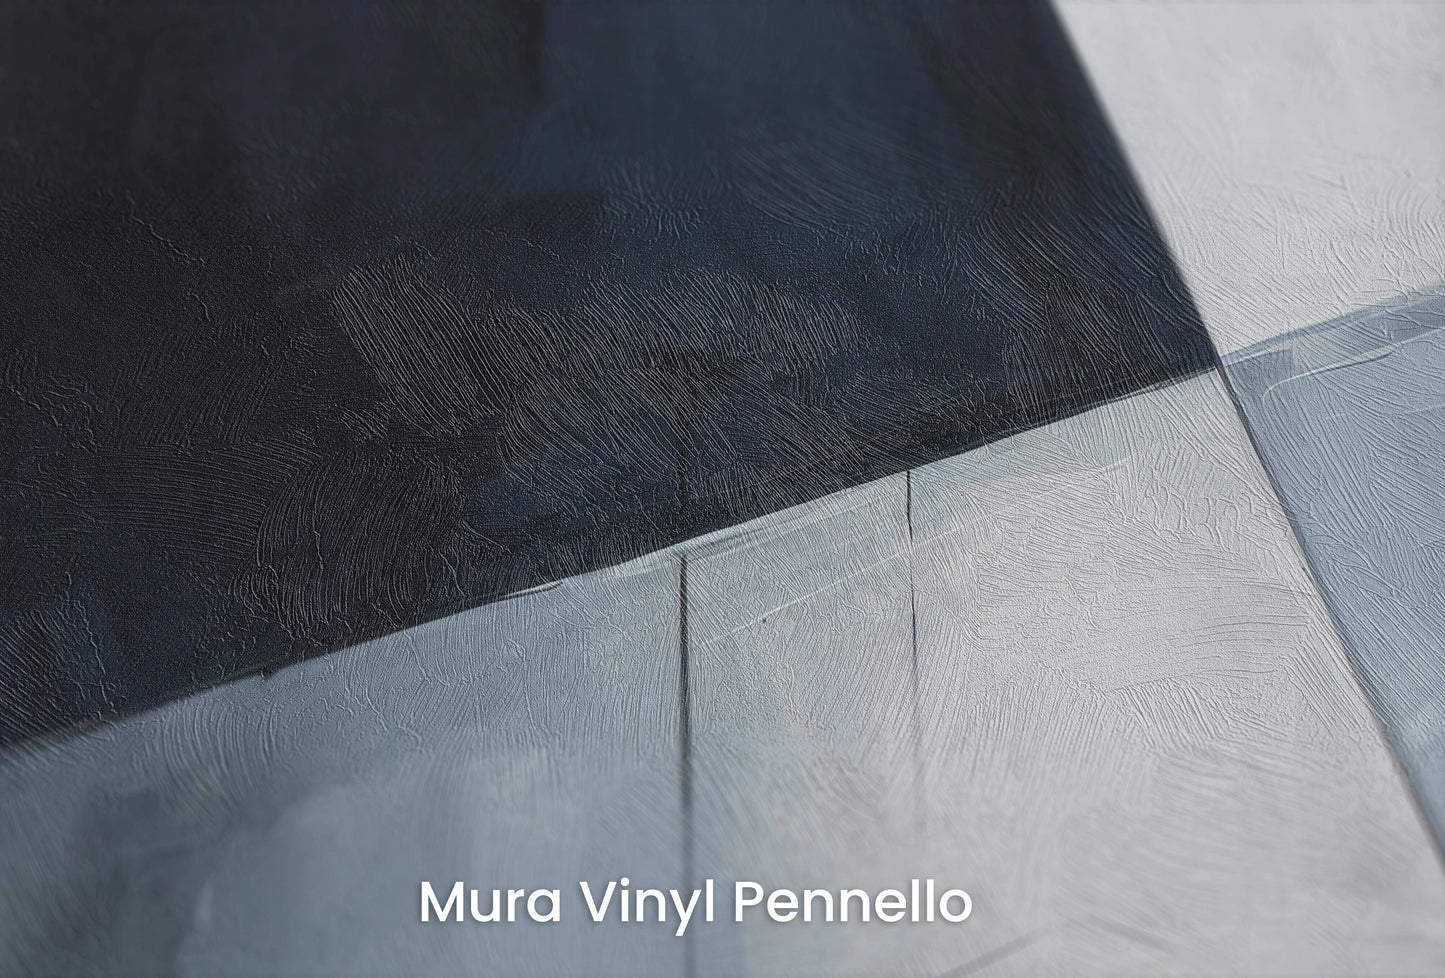 Zbliżenie na artystyczną fototapetę o nazwie Tranquil Shapes na podłożu Mura Vinyl Pennello - faktura pociągnięć pędzla malarskiego.